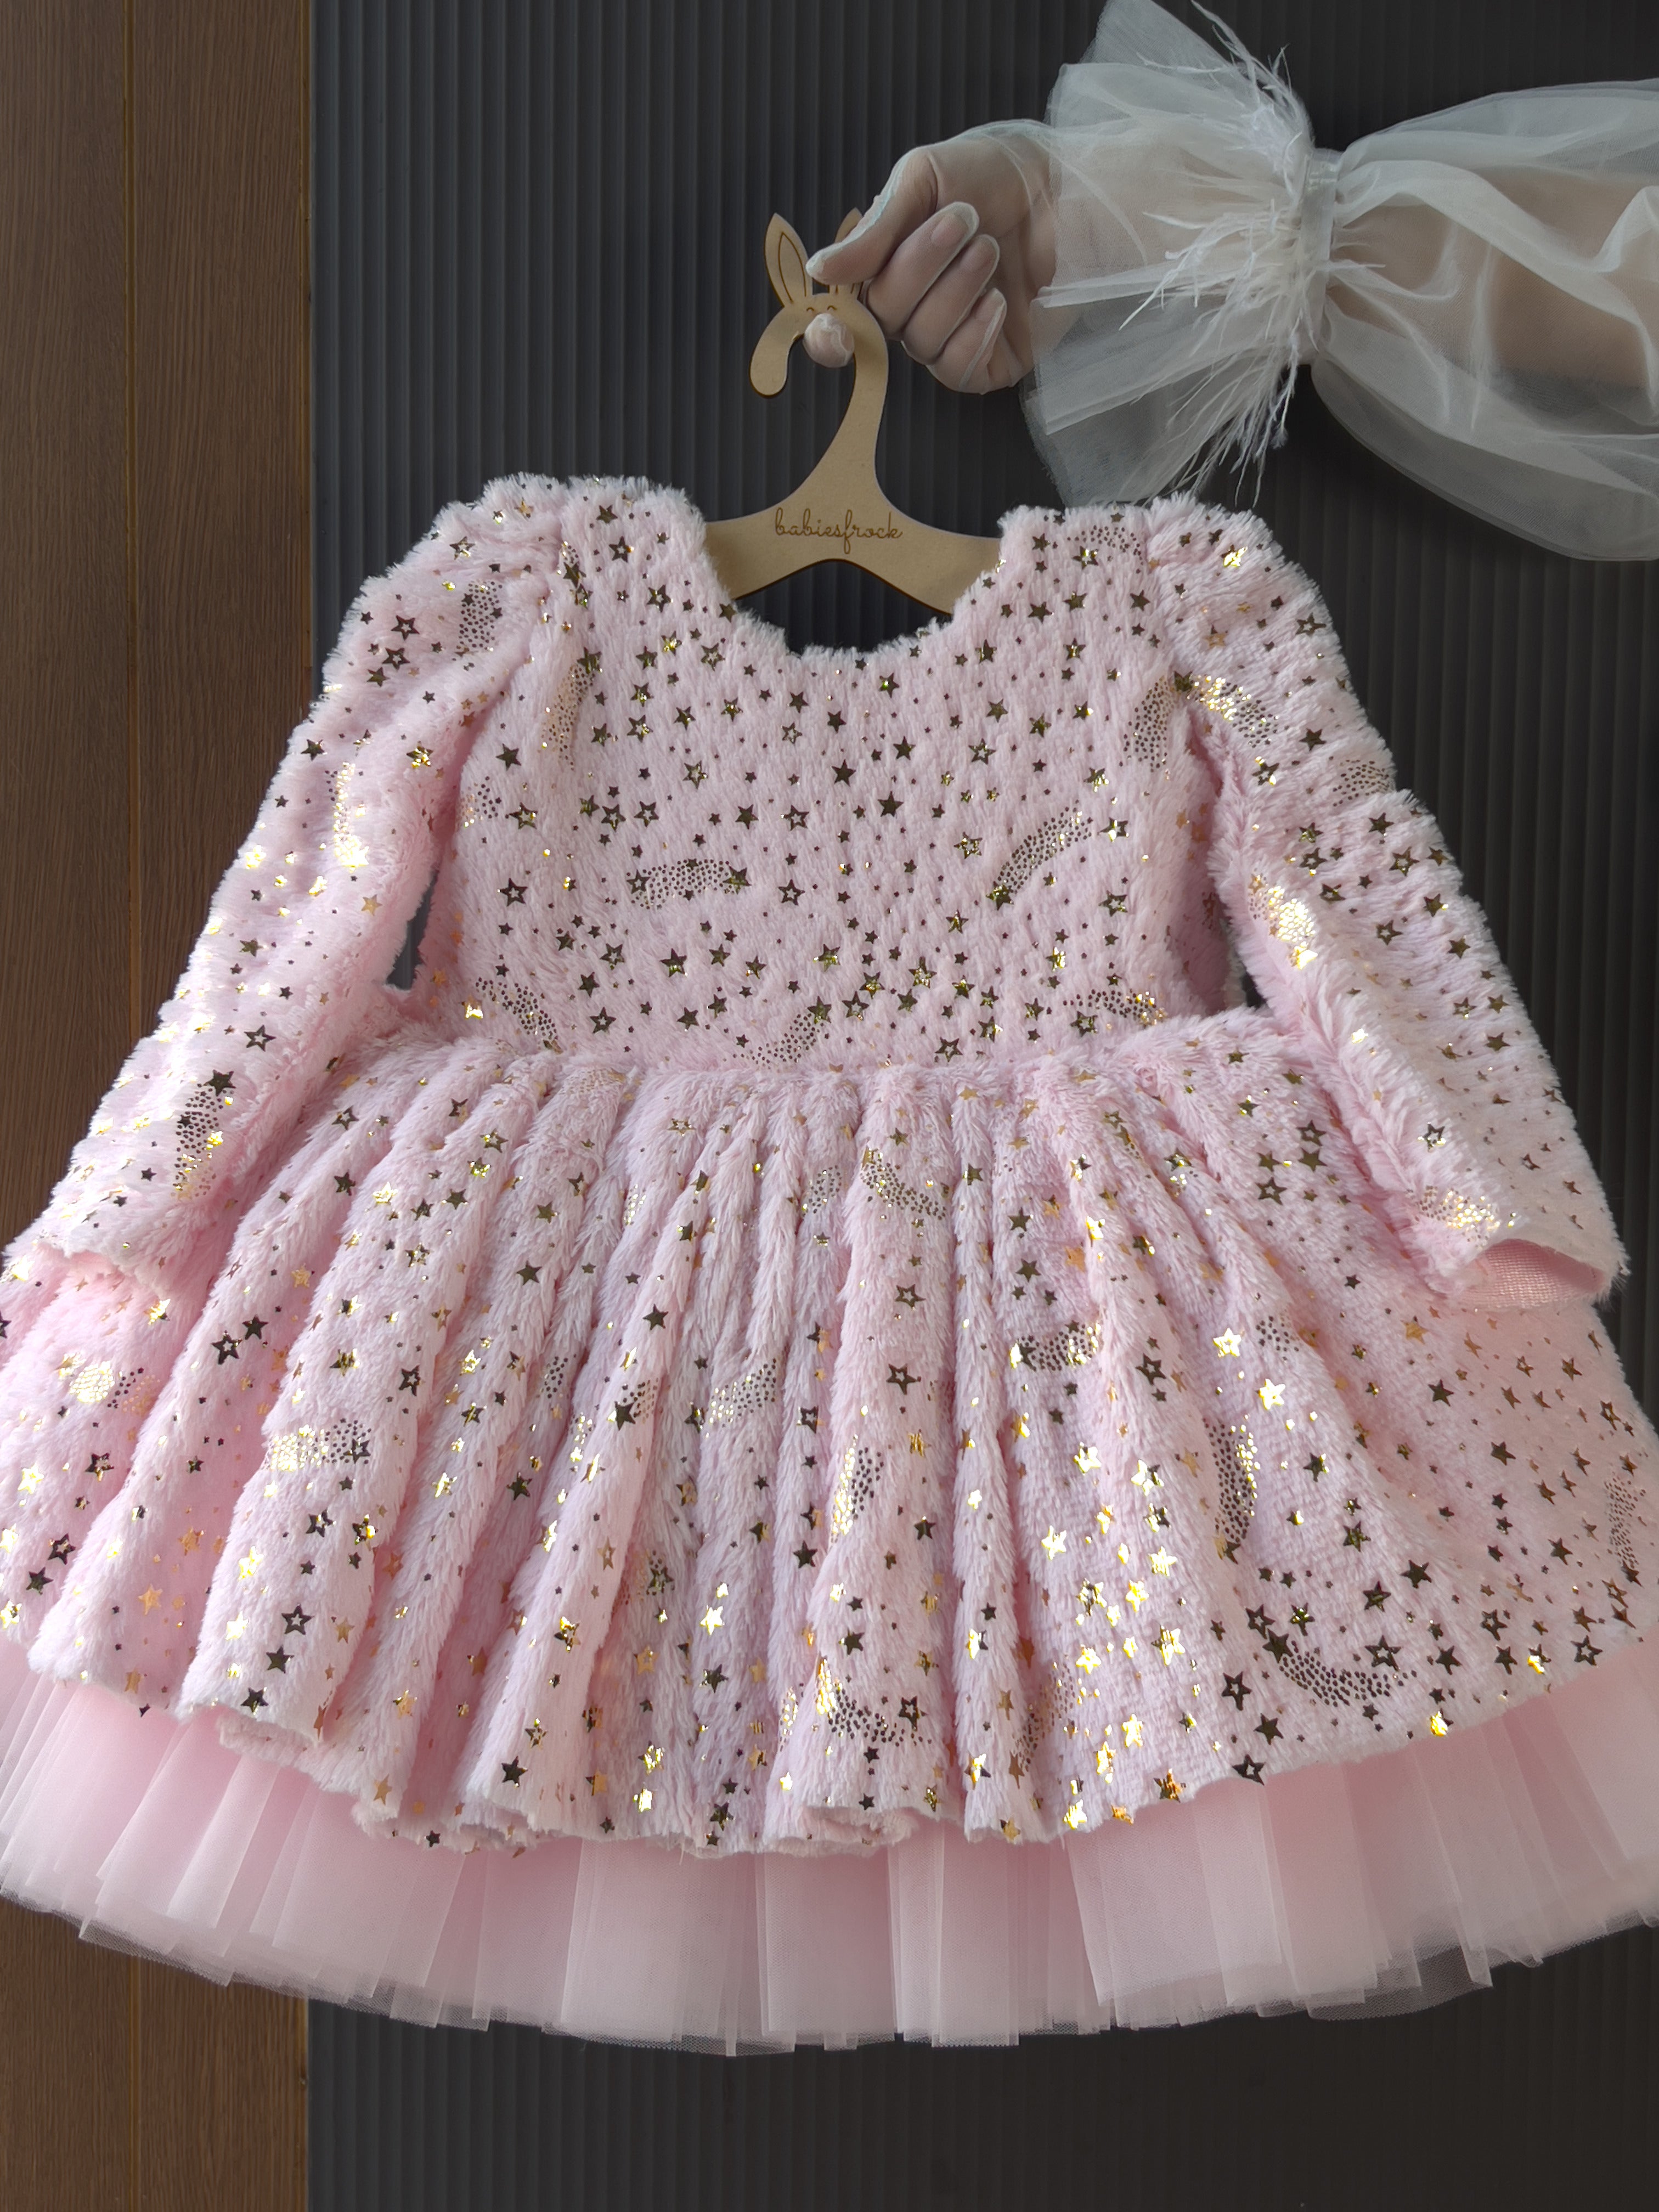 Baby Girl Crochet Dress, Baby Girl Summer Dresses, Baby Girl Pink Dress, Baby  Girl Clothes - Etsy | Crochet baby, Baby girl crochet, Crochet baby clothes